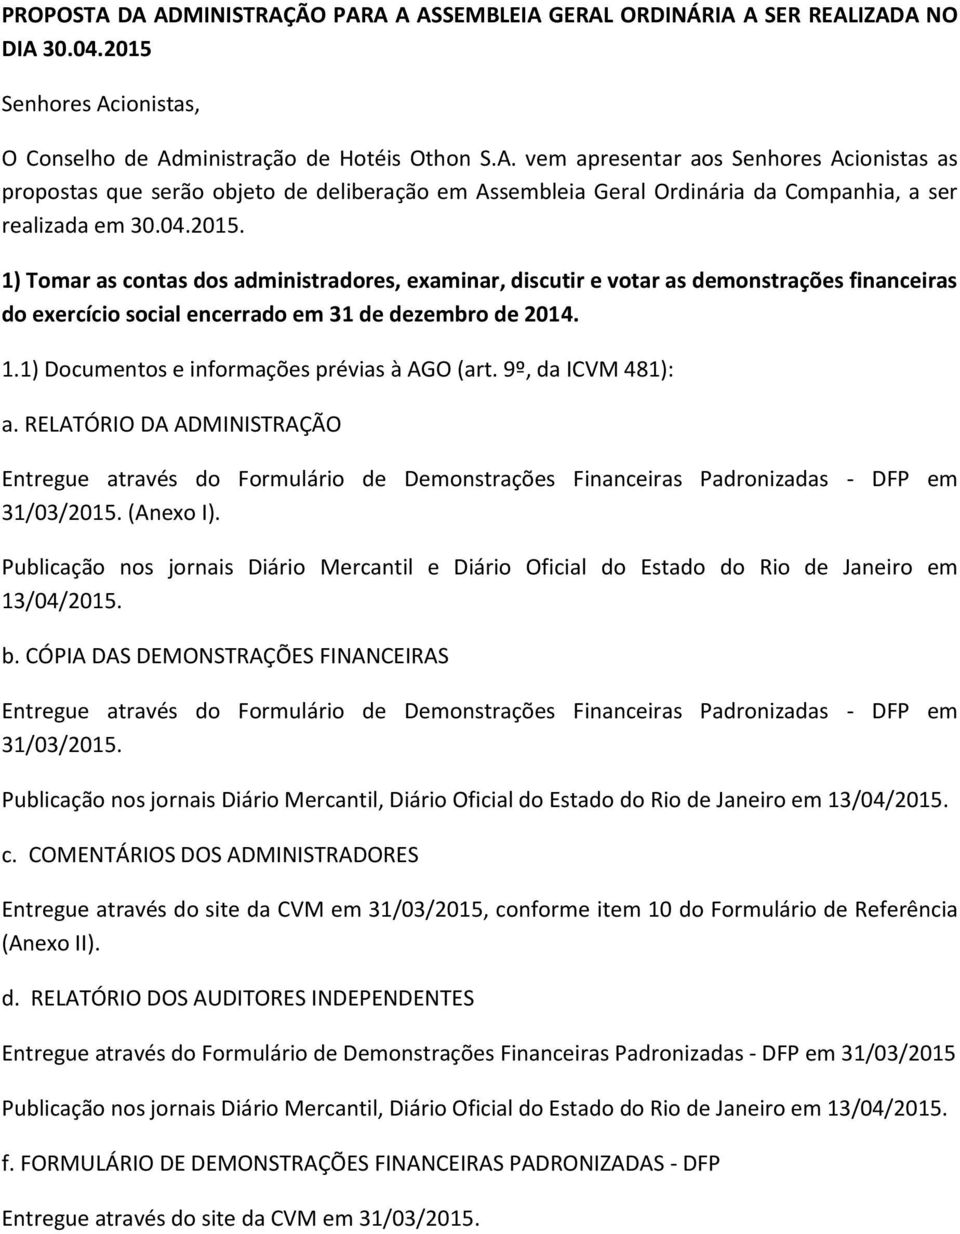 9º, da ICVM 481): a. RELATÓRIO DA ADMINISTRAÇÃO Entregue através do Formulário de Demonstrações Financeiras Padronizadas - DFP em 31/03/2015. (Anexo I).